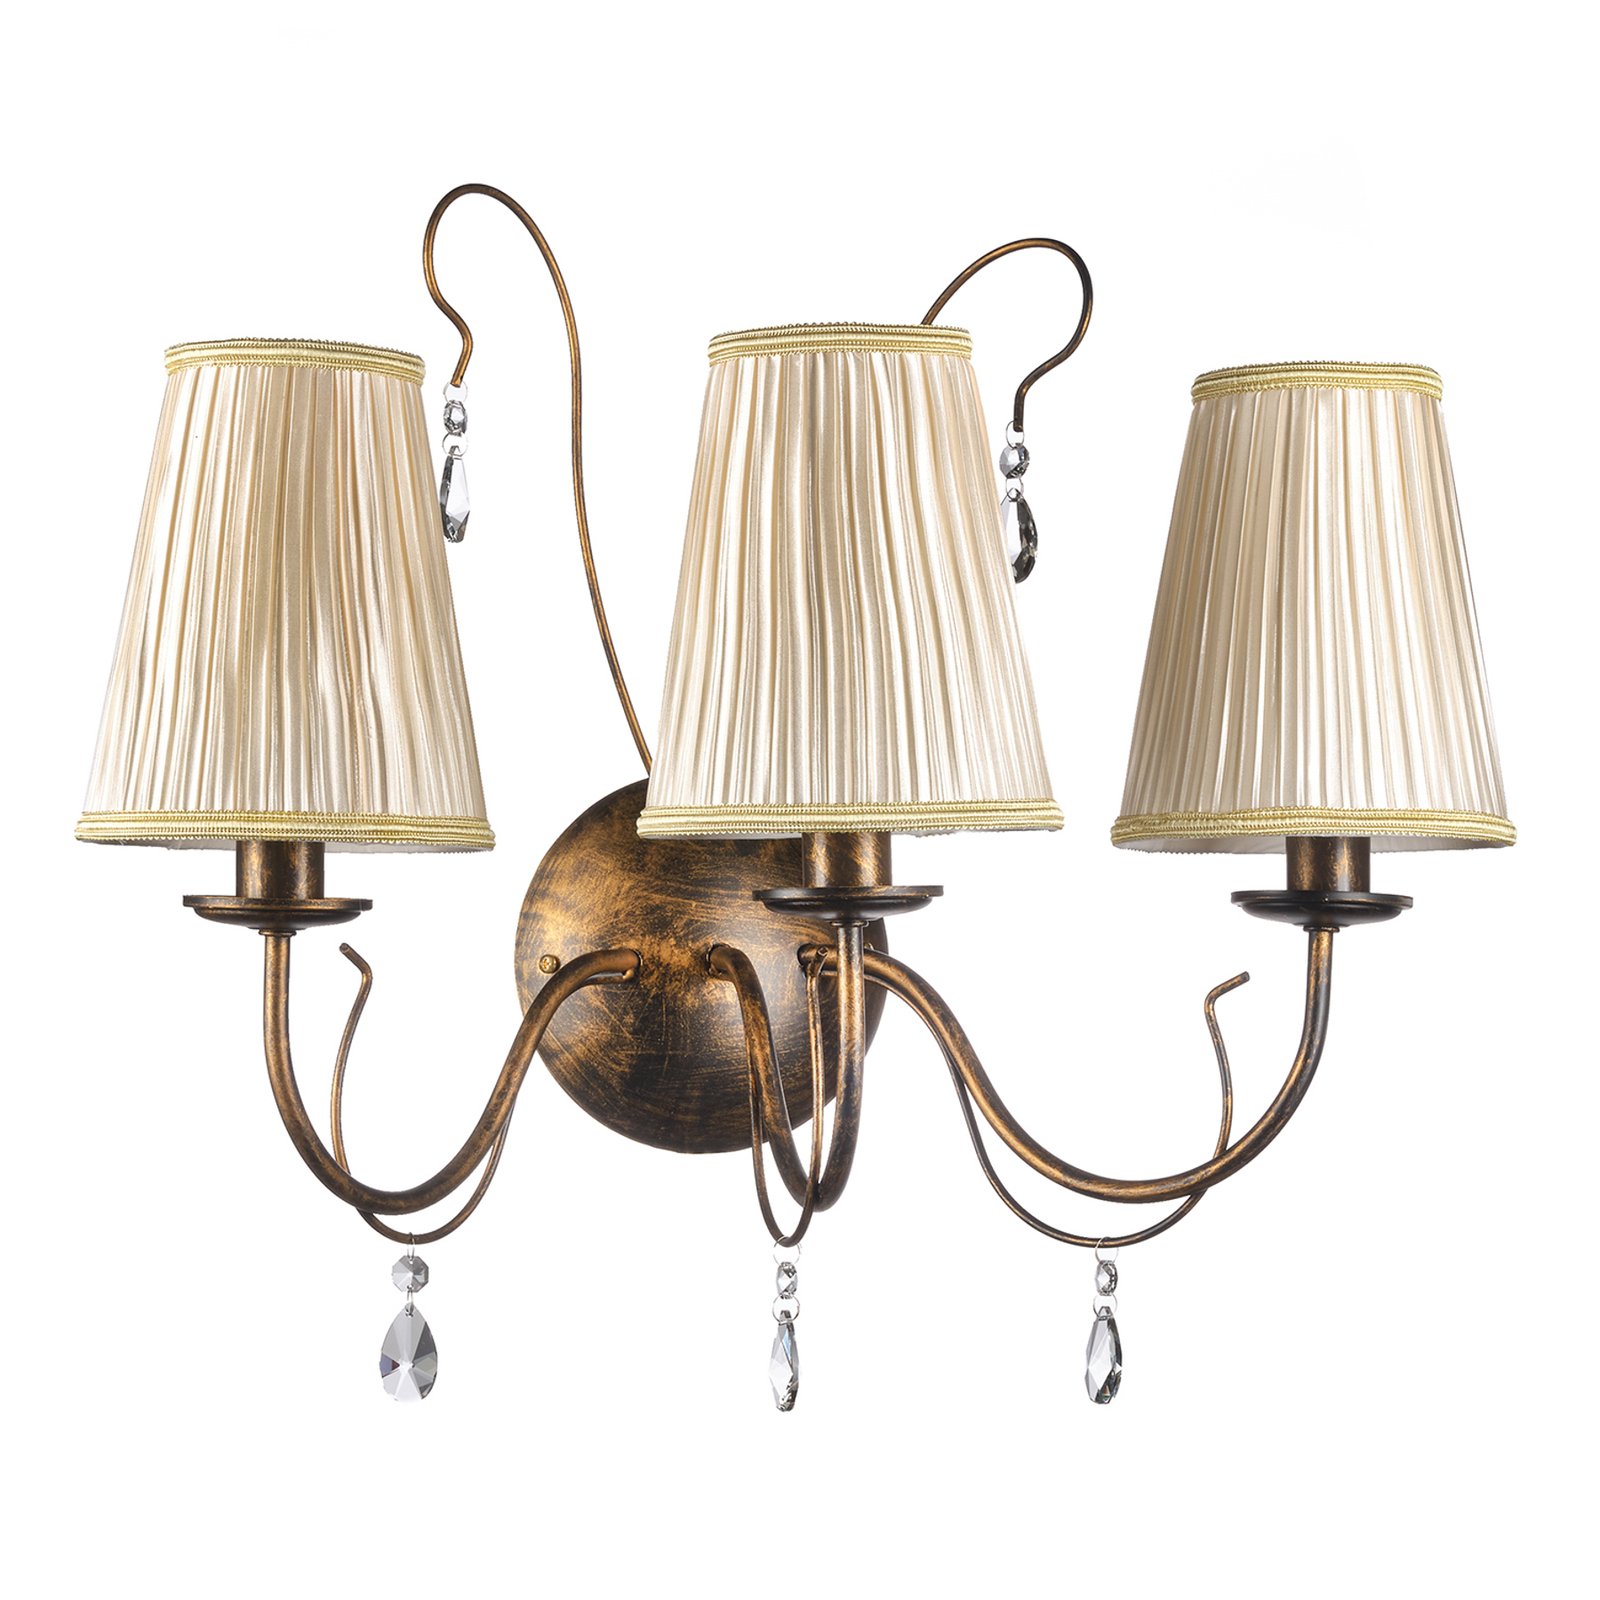 Delia wandlamp, bronskleurig, 3-lamps, breedte 56 cm